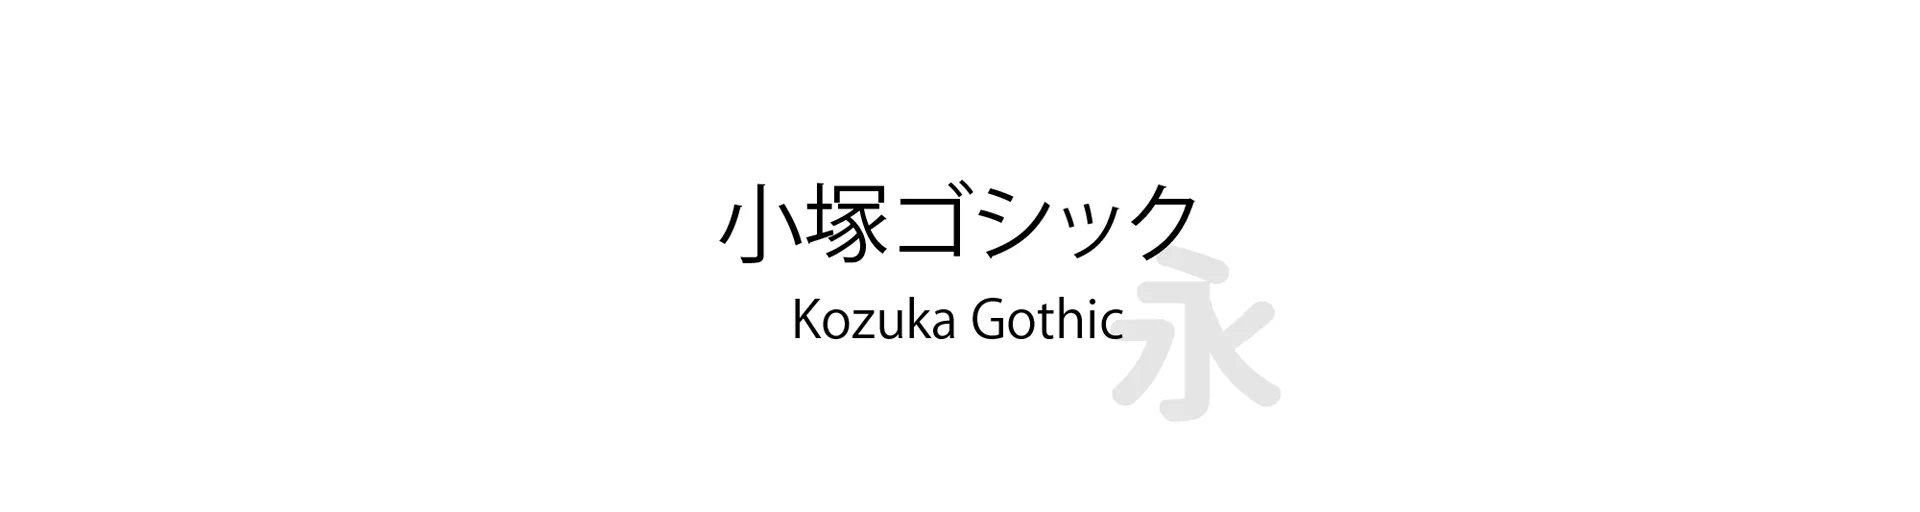 Kozuka Gothic